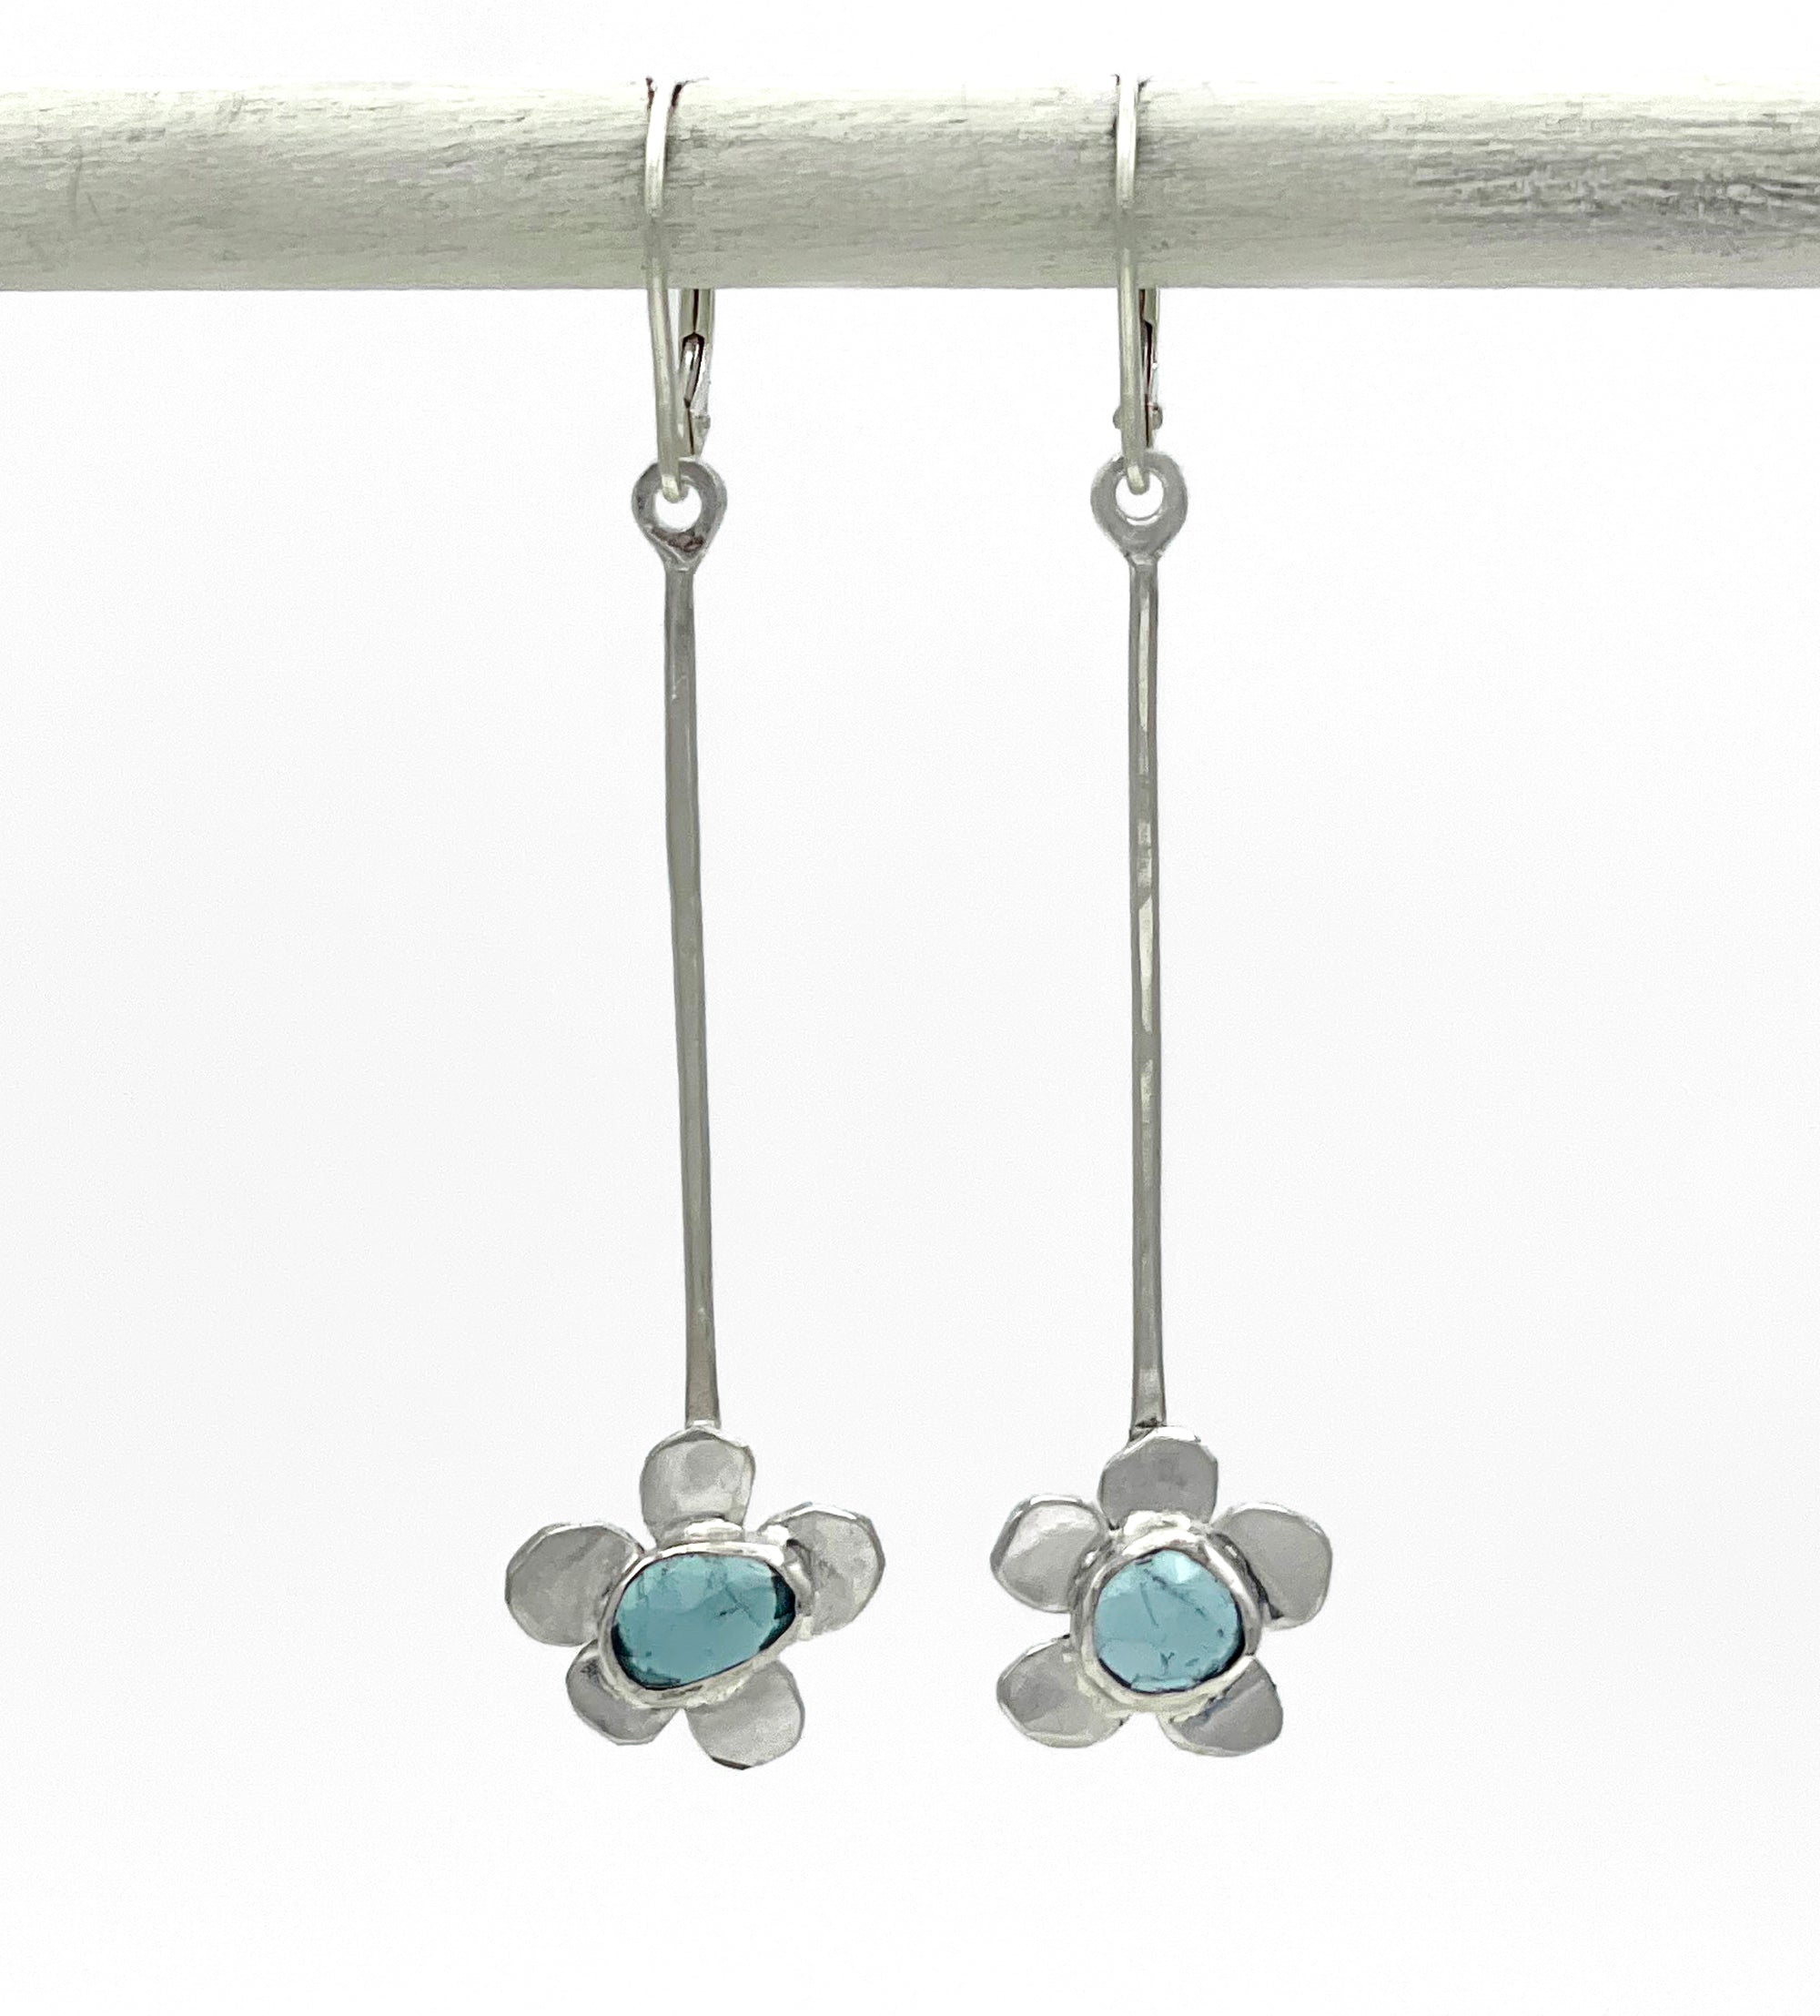 Tourmaline Earrings, Blue Tourmaline Flower Earrings, Sterling Silver